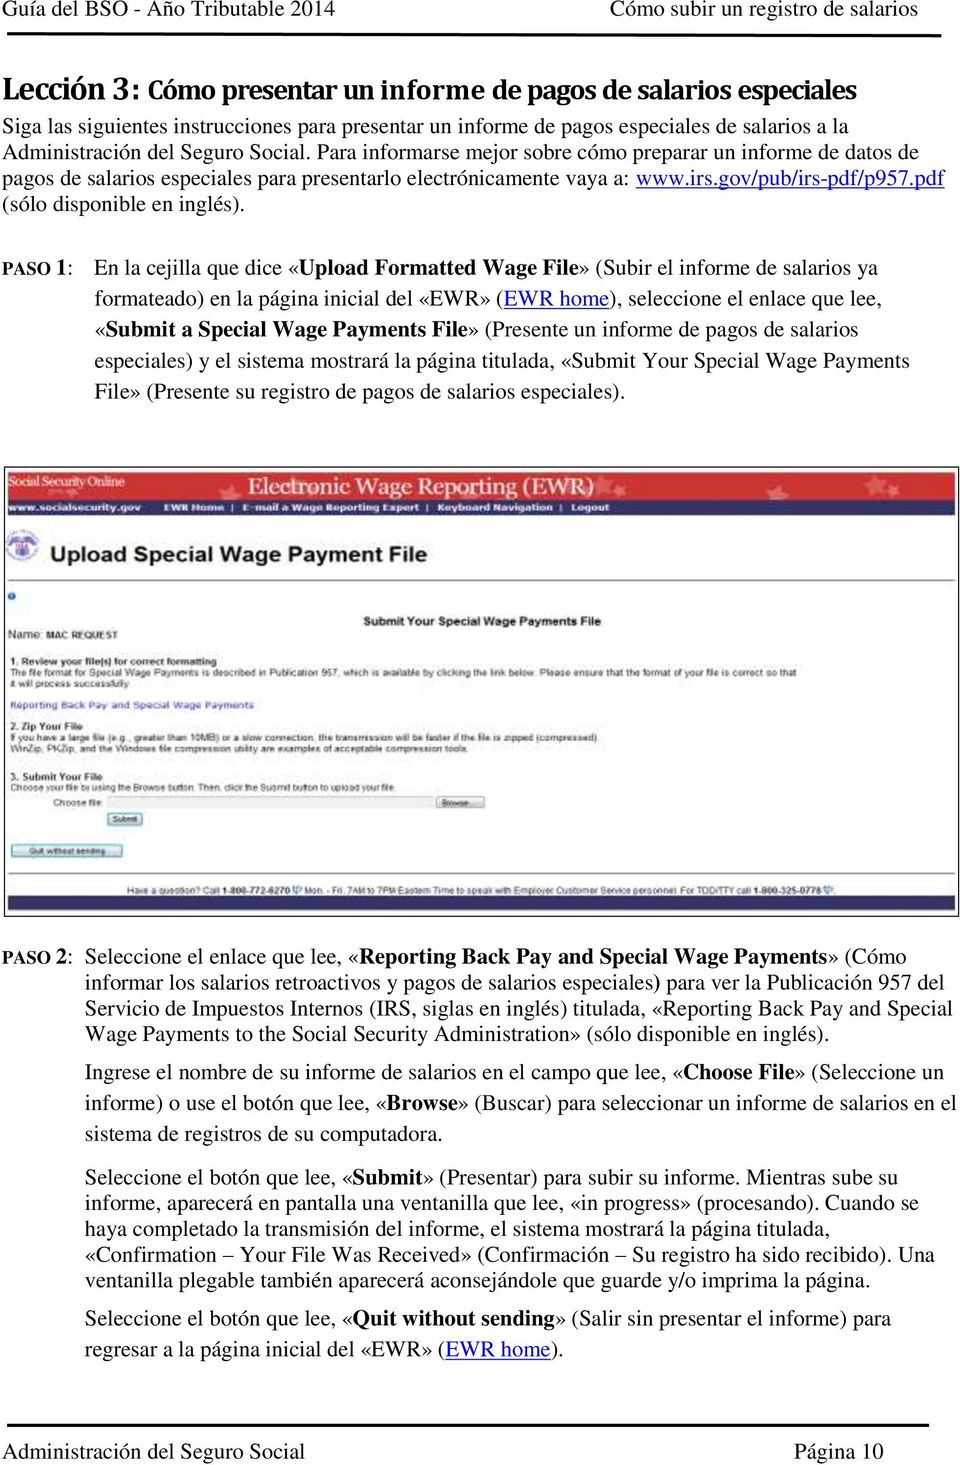 PASO 1: En la cejilla que dice «Upload Formatted Wage File» (Subir el informe de salarios ya formateado) en la página inicial del «EWR» (EWR home), seleccione el enlace que lee, «Submit a Special